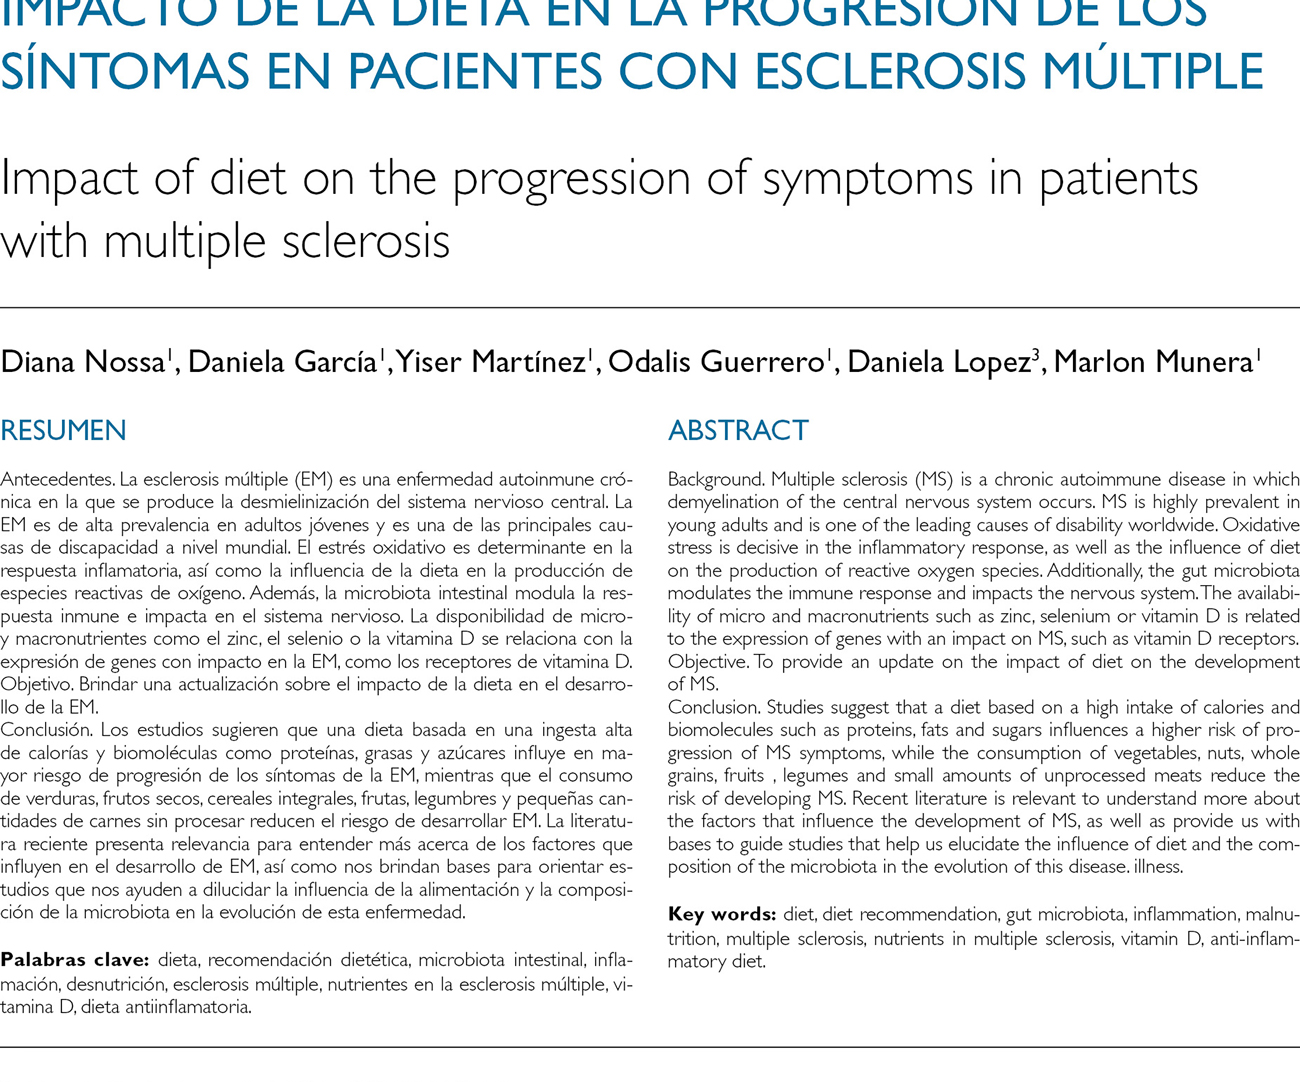 Impacto de la dieta en la progresión de los síntomas en pacientes con esclerosis múltiple